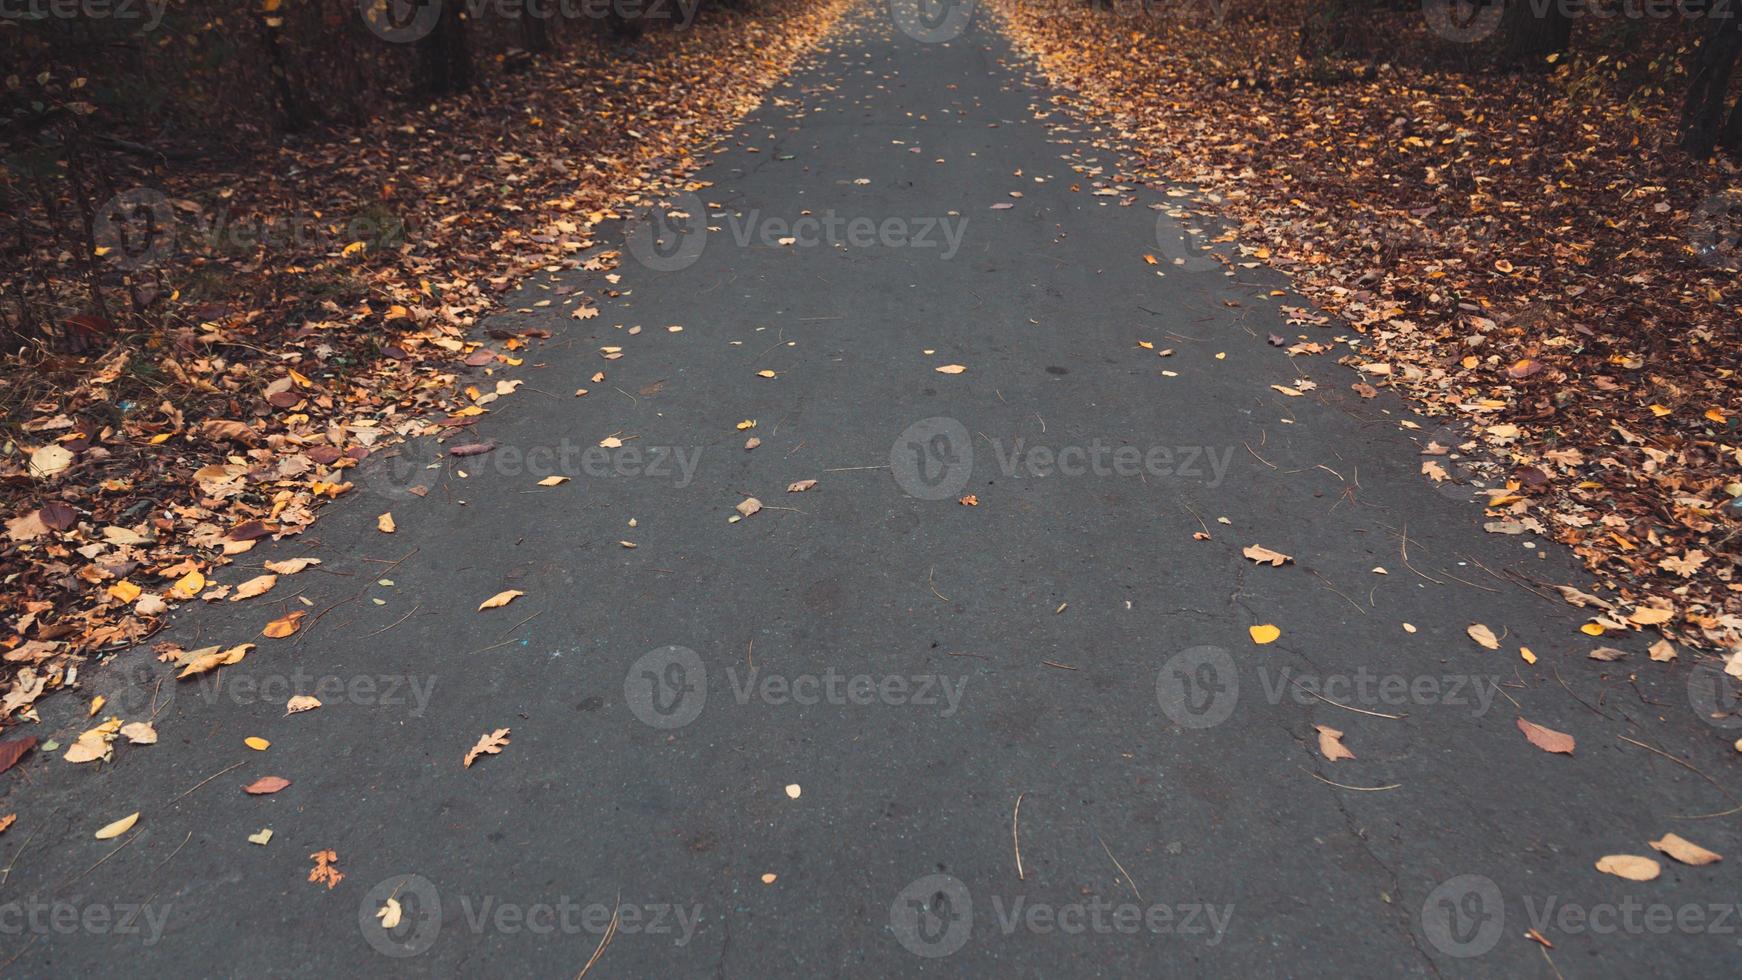 route forestière d'automne photo